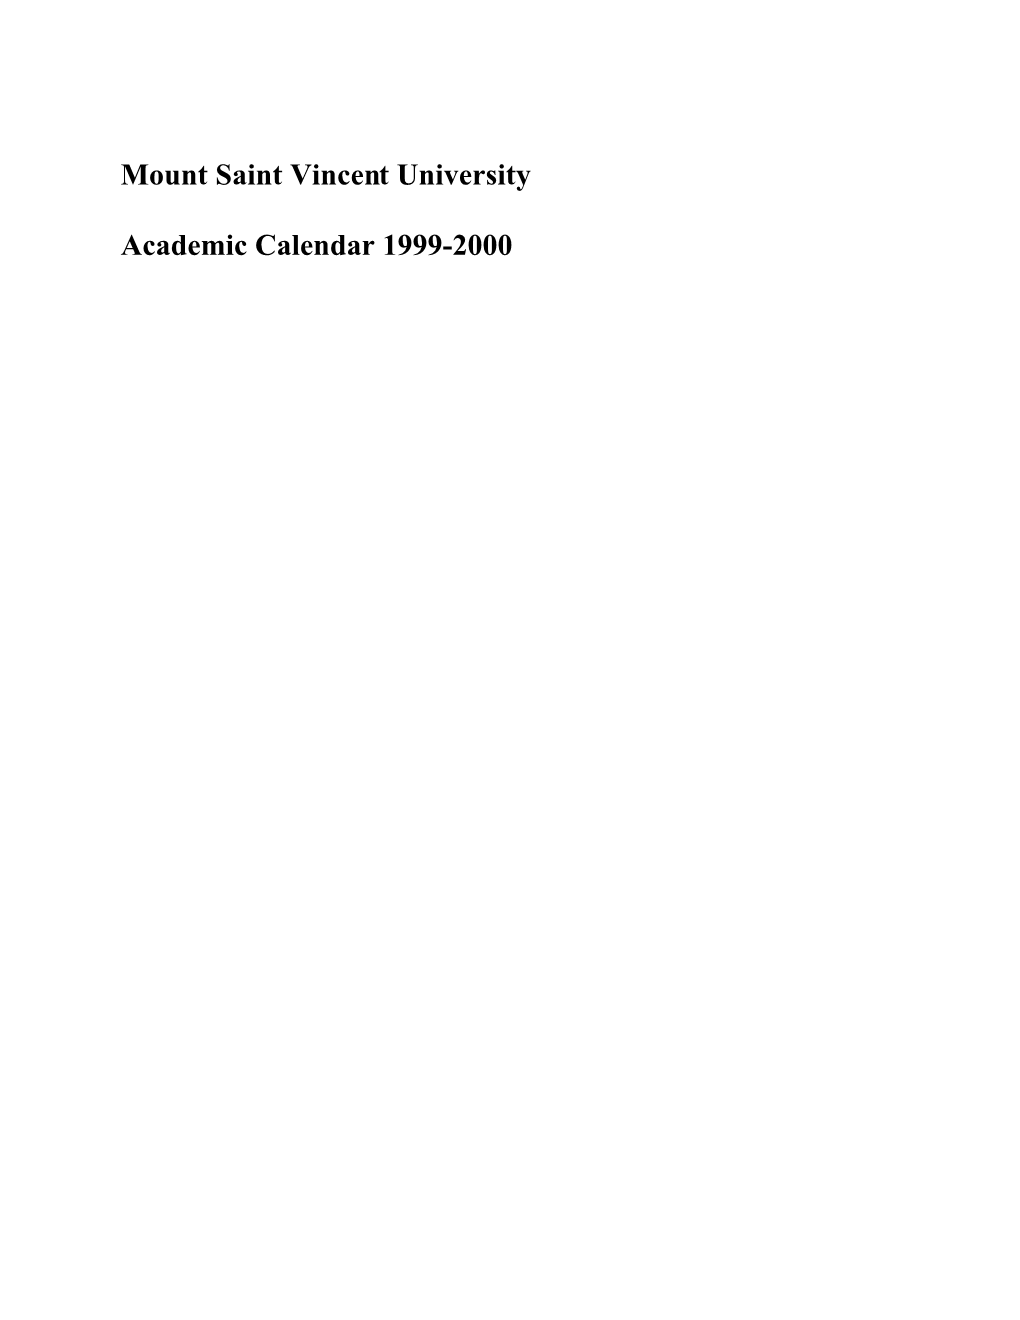 Mount Saint Vincent University Academic Calendar 1999-2000